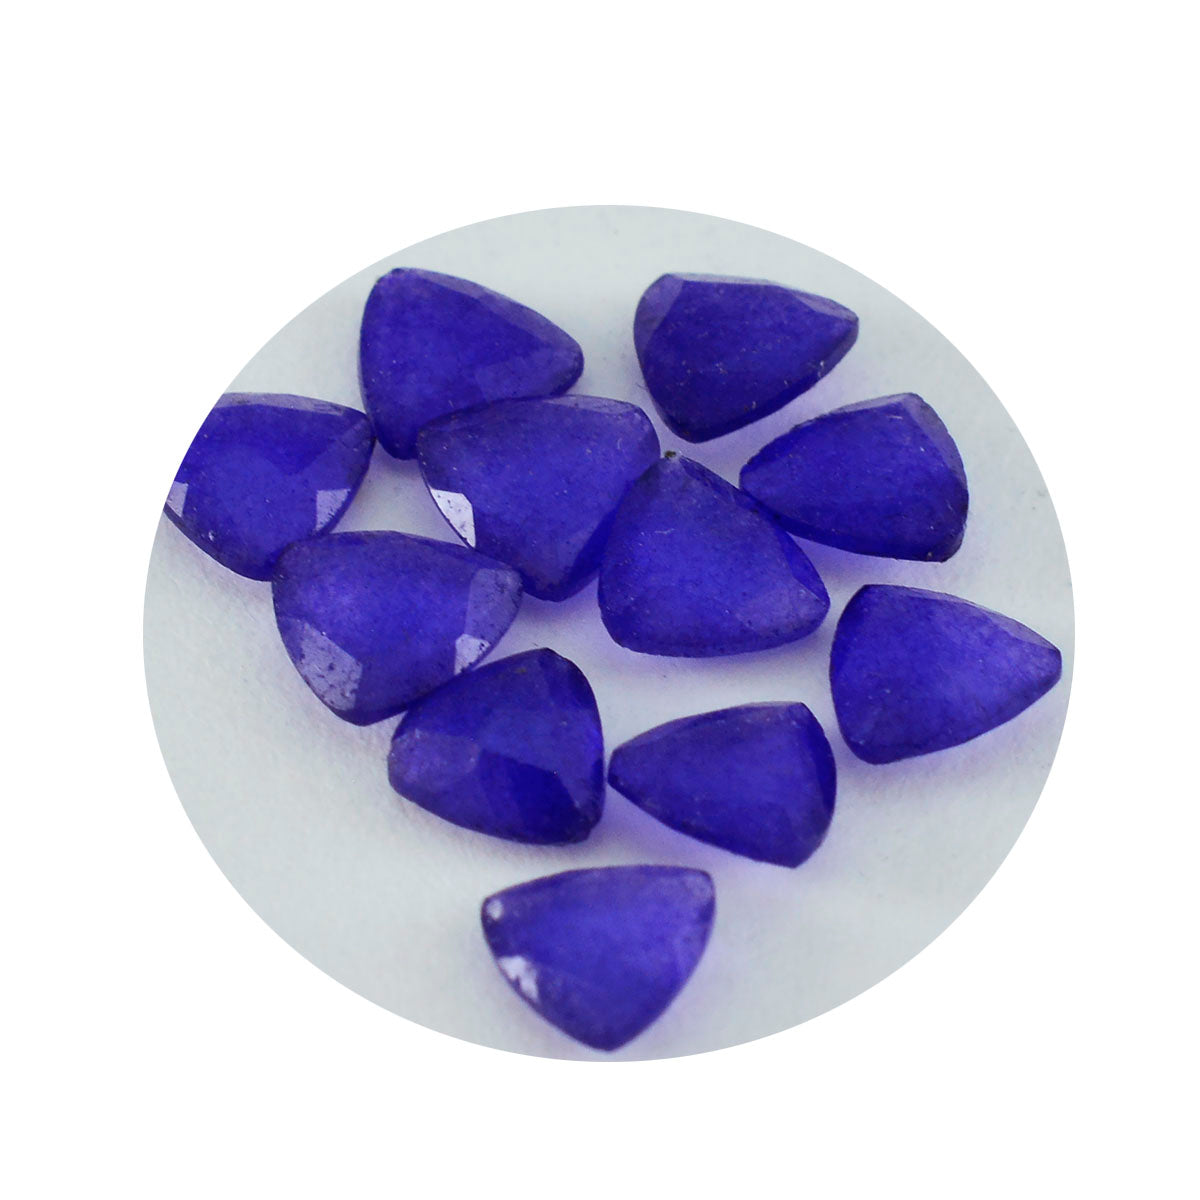 riyogems 1 шт. натуральная синяя яшма ограненная 5x5 мм форма триллиона отличное качество драгоценный камень